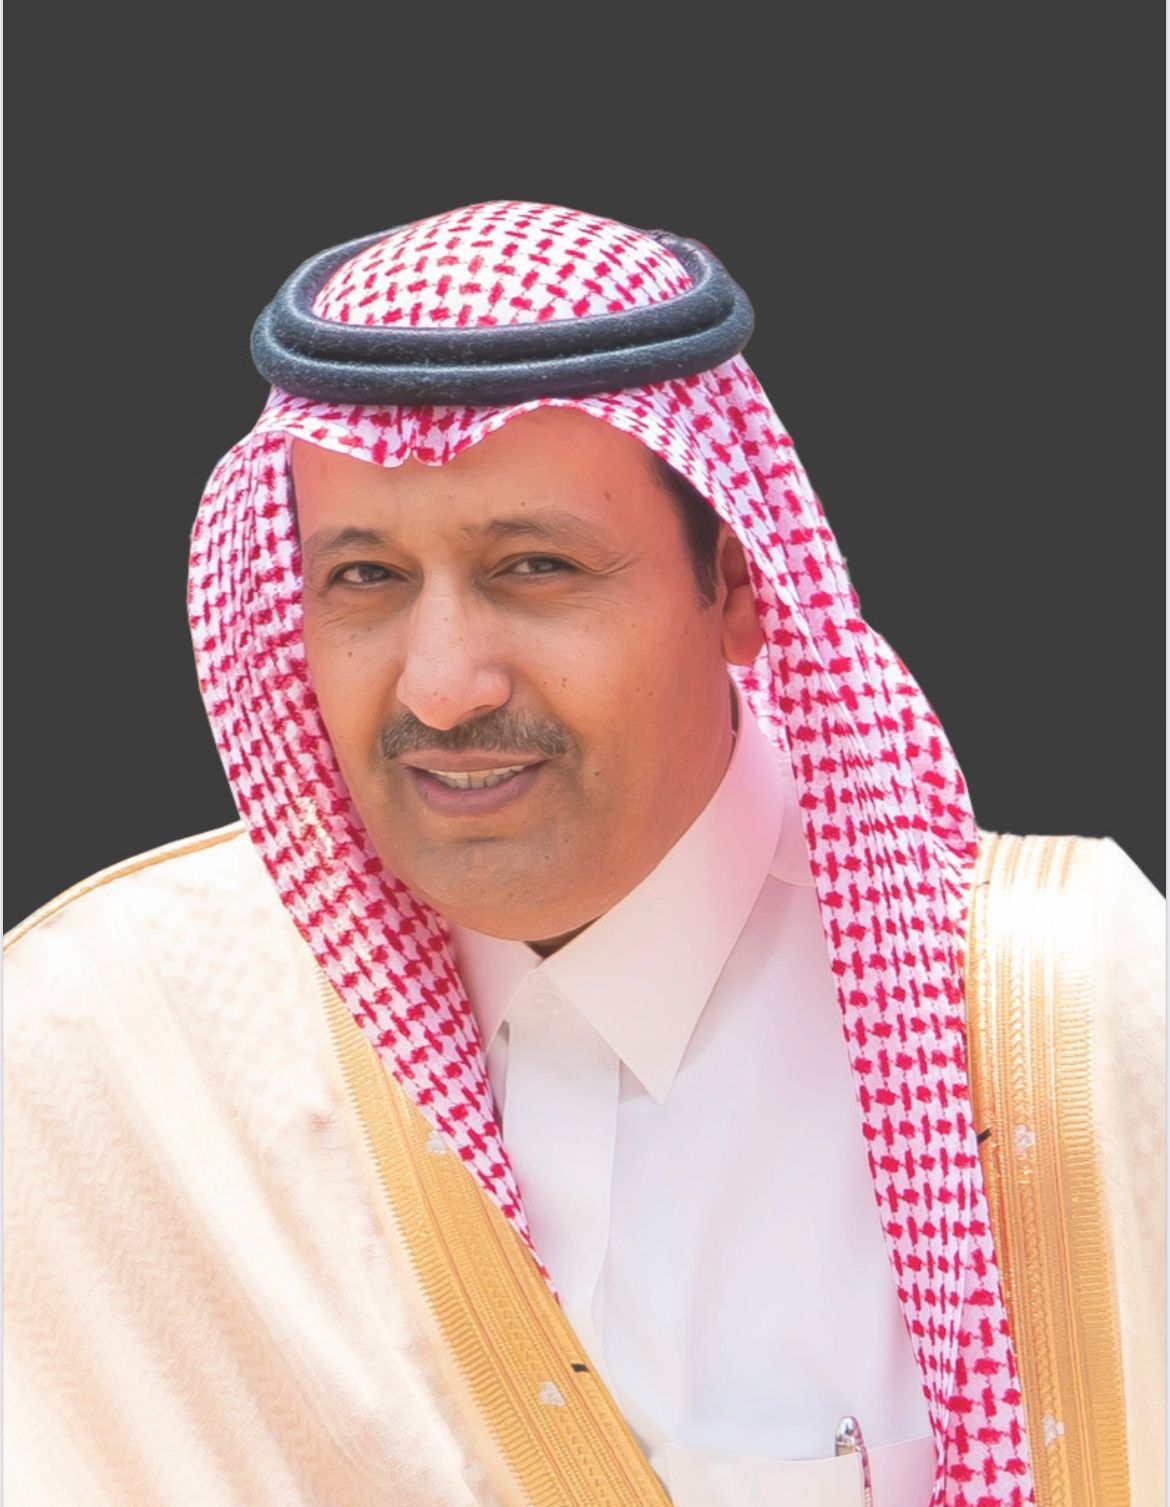 أمير الباحة يرعى احتفال مركز جمعية الاطفال المعوقين بالمنطقة